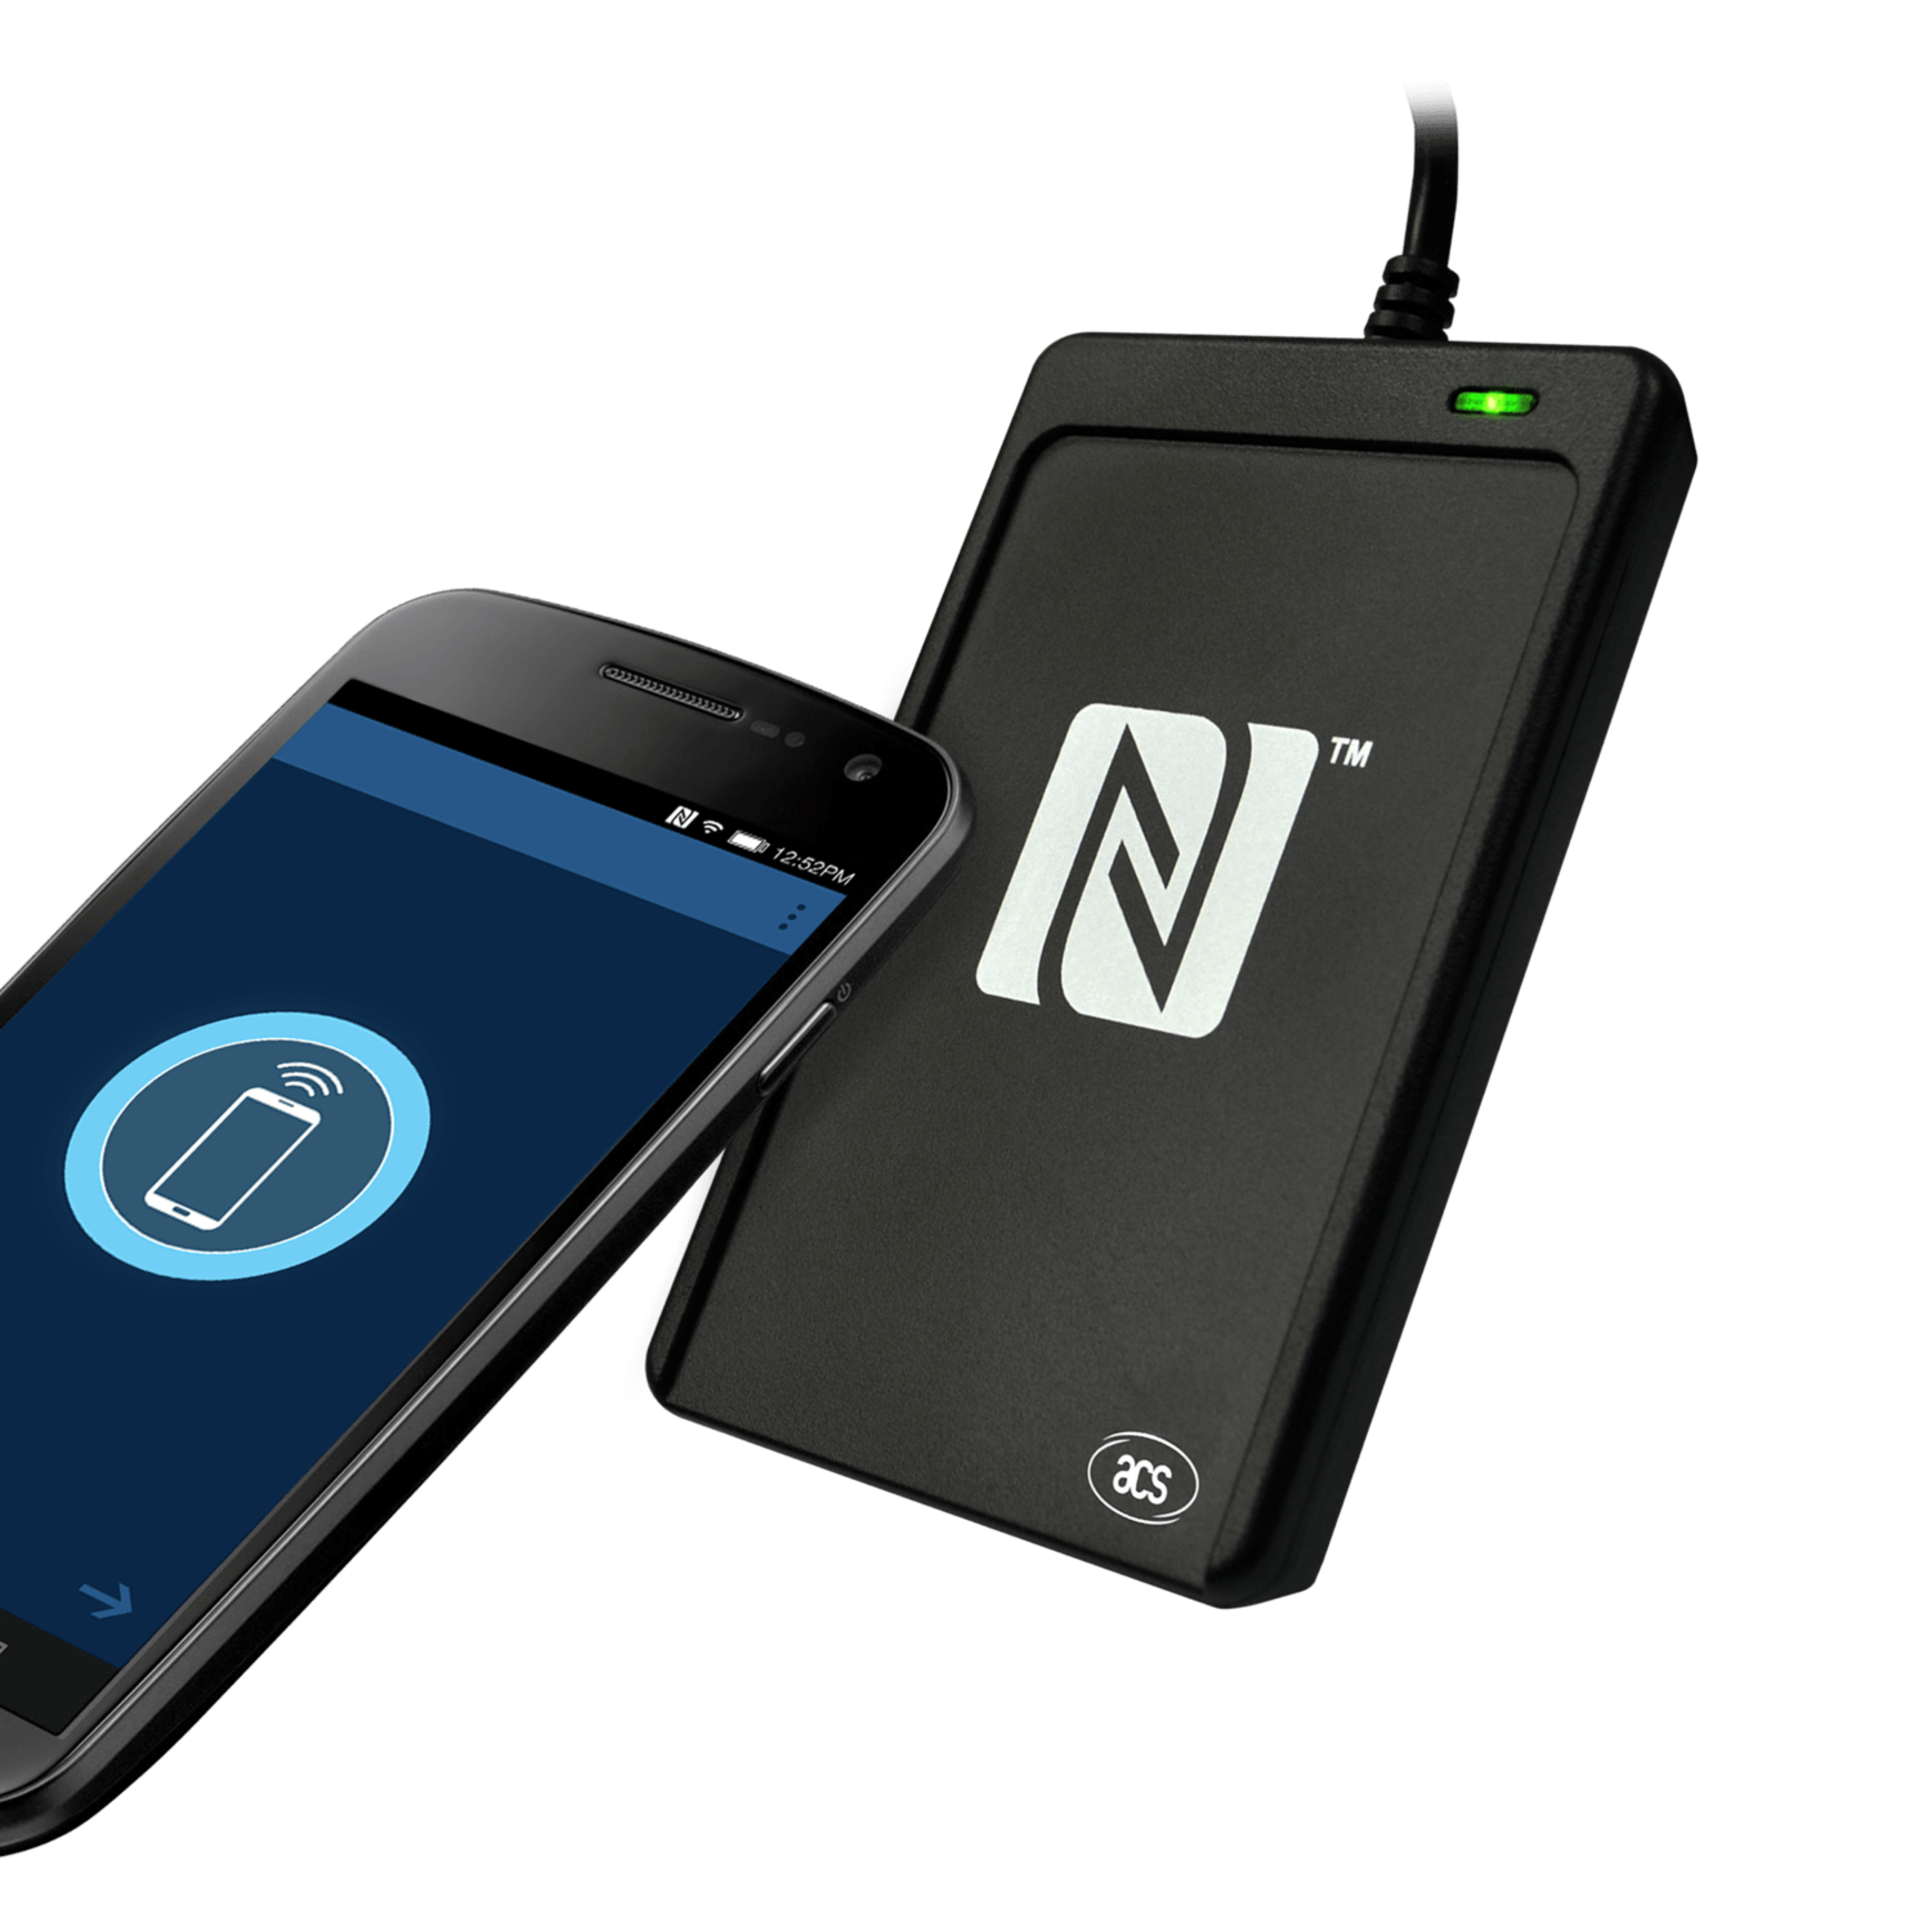 Smartphone, dass eine Scanfunktion am  NFC Reader durchführt